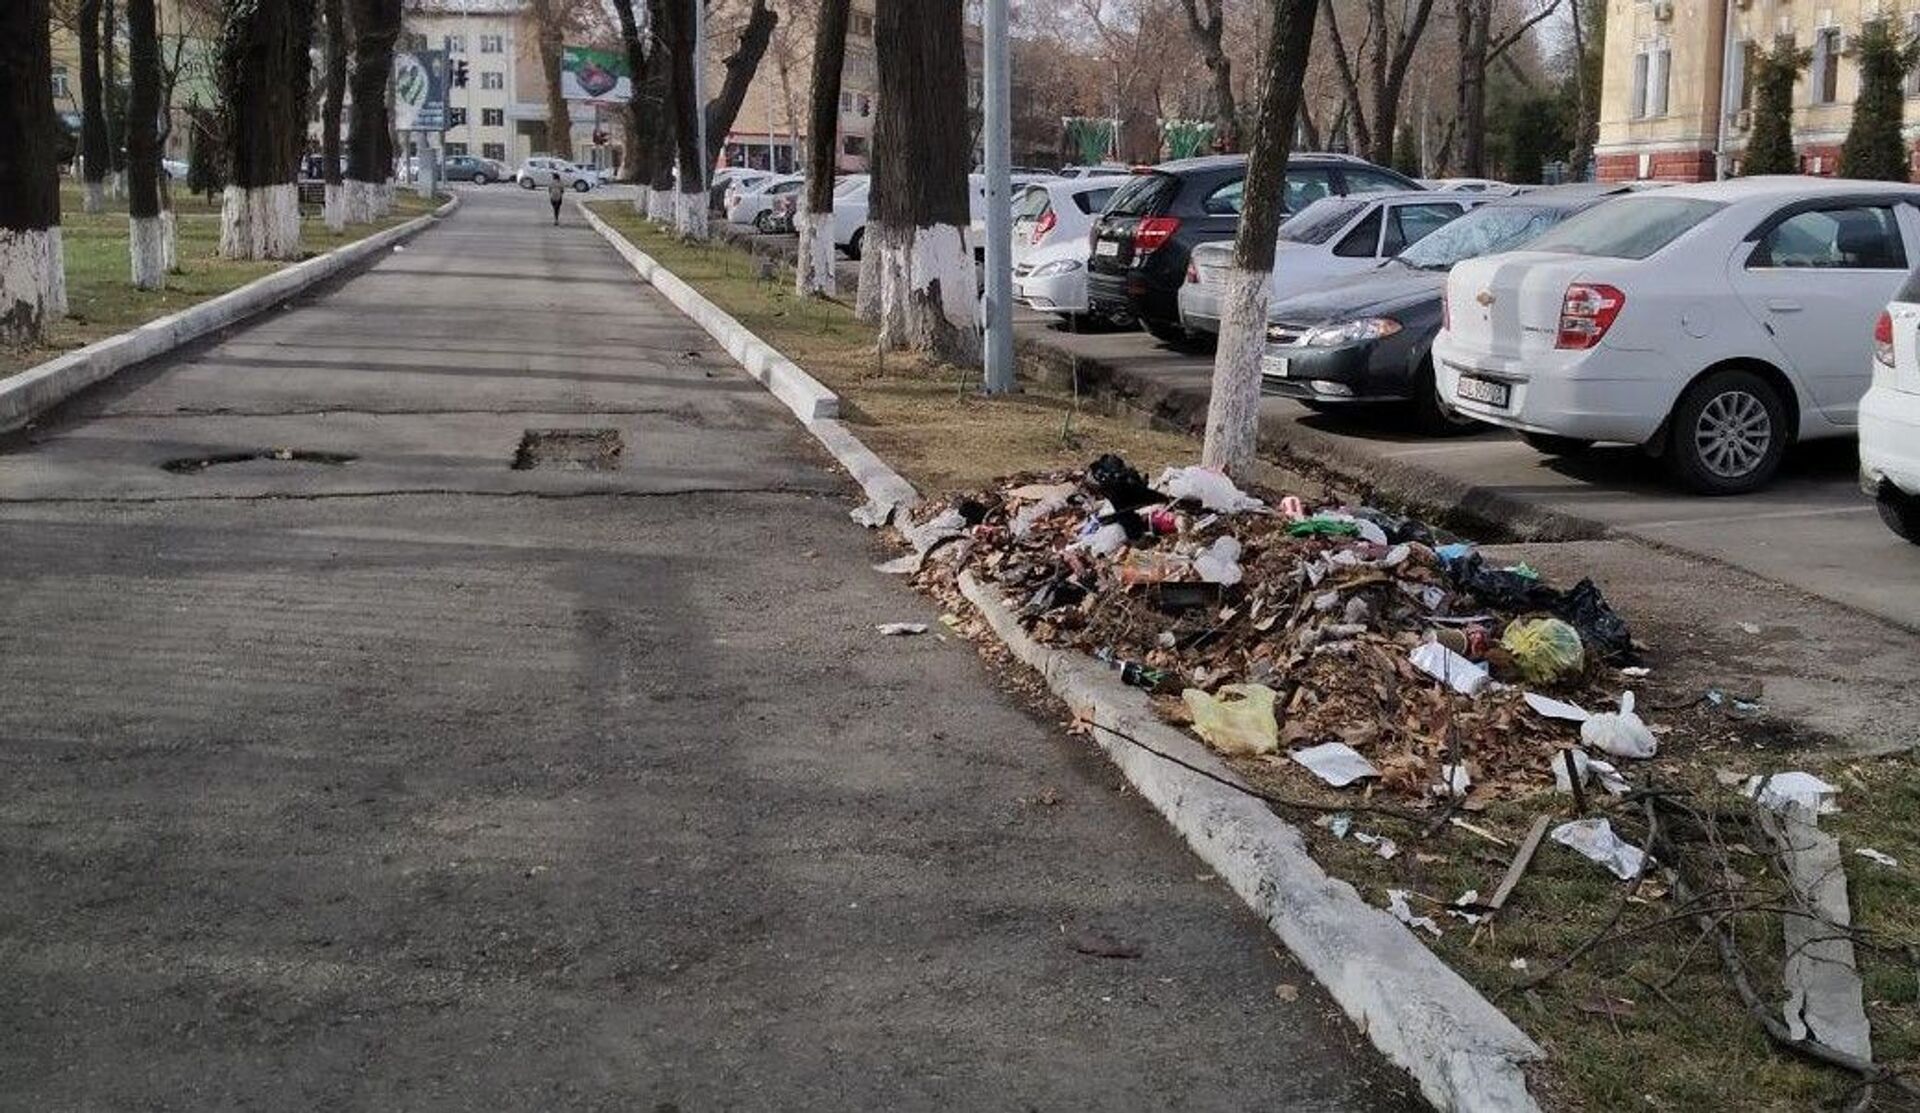 Мусор рядом с тротуаром на одной из улиц в центре Ташкента - Sputnik Узбекистан, 1920, 10.03.2021